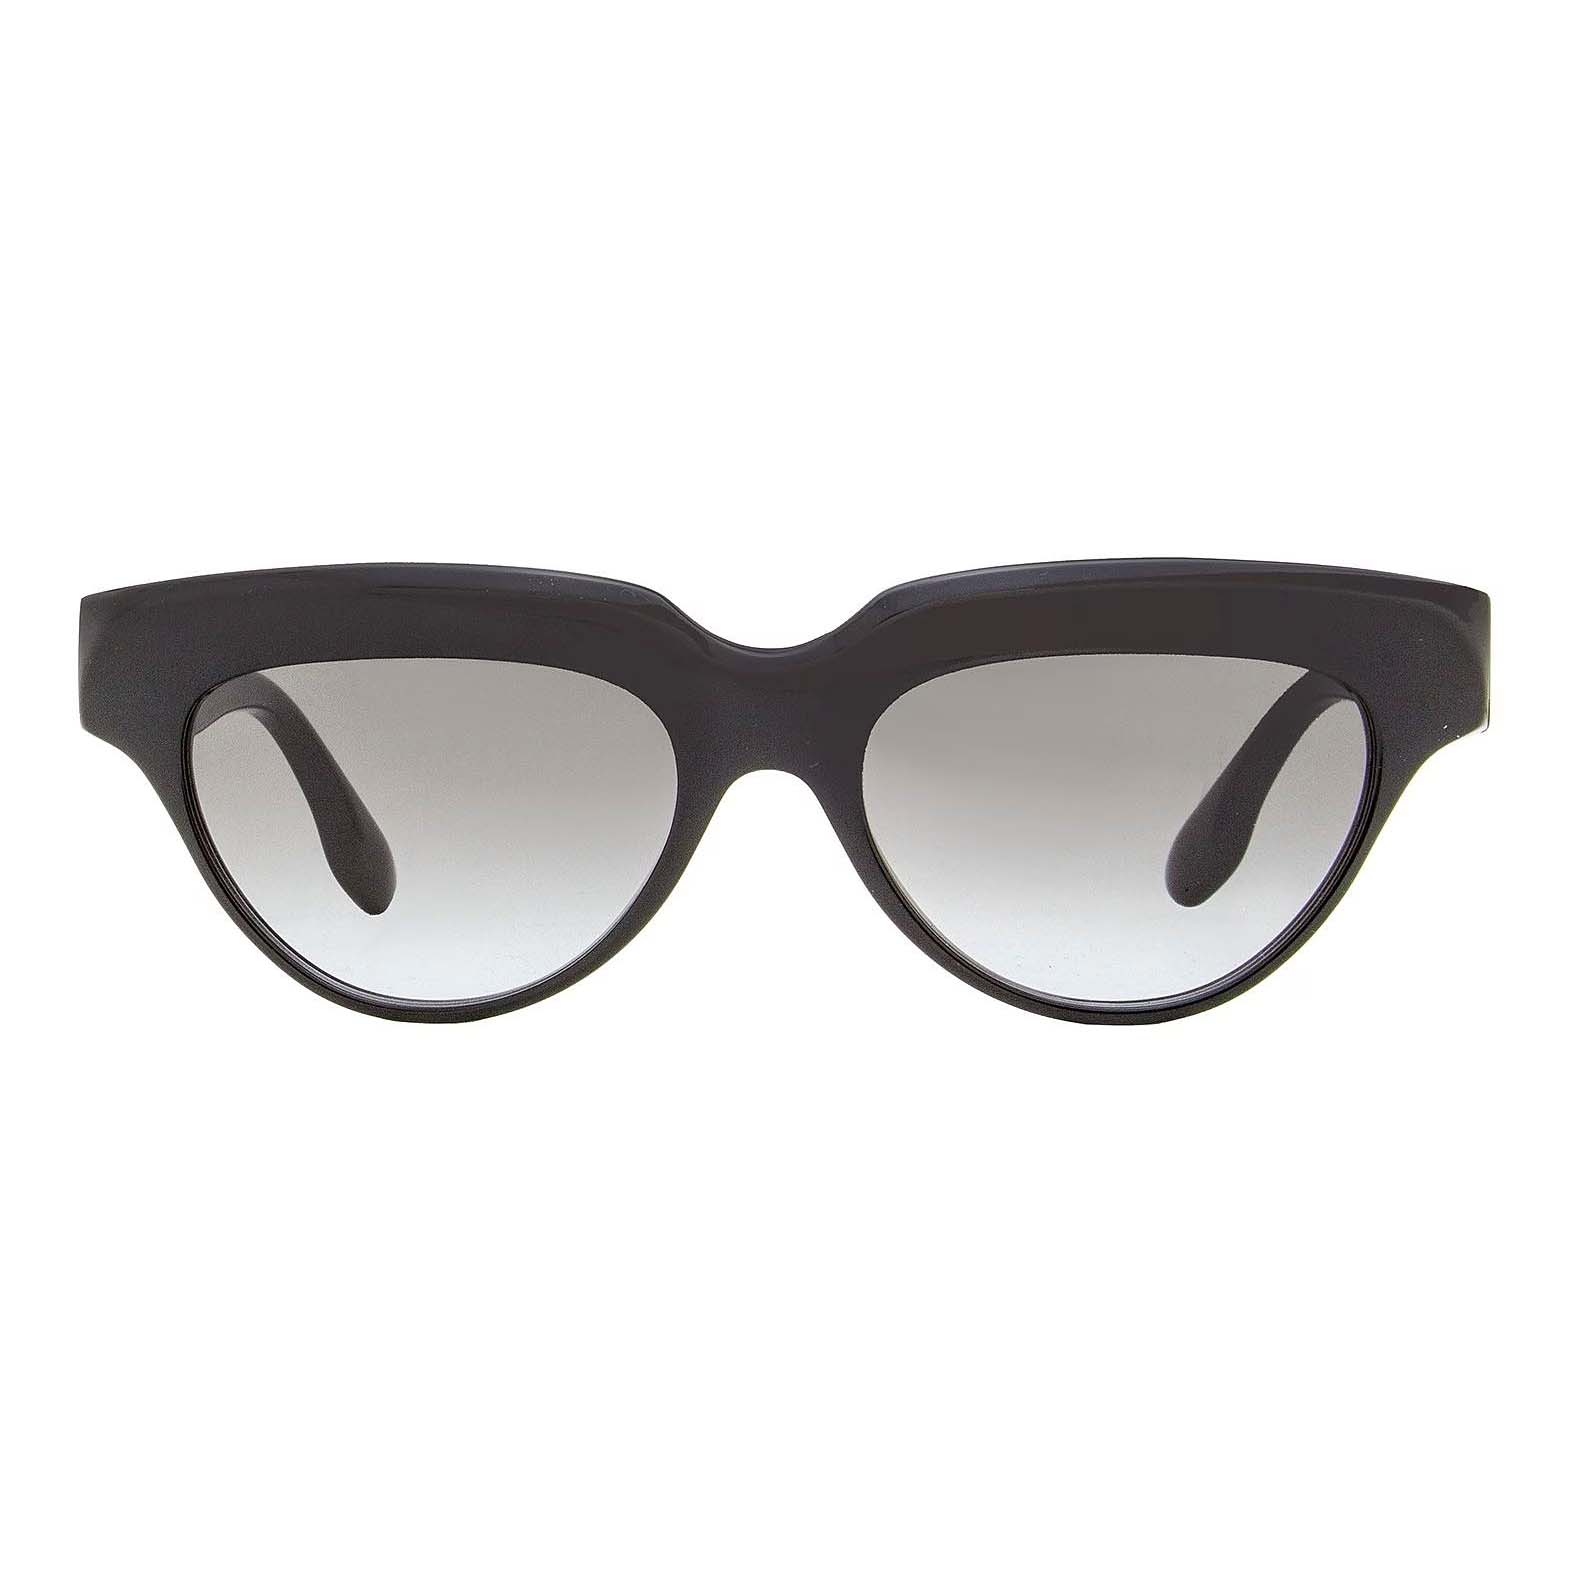 Солнцезащитные очки Victoria Beckham Cateye VB602S, черный очки кошачий глаз vb602s victoria beckham